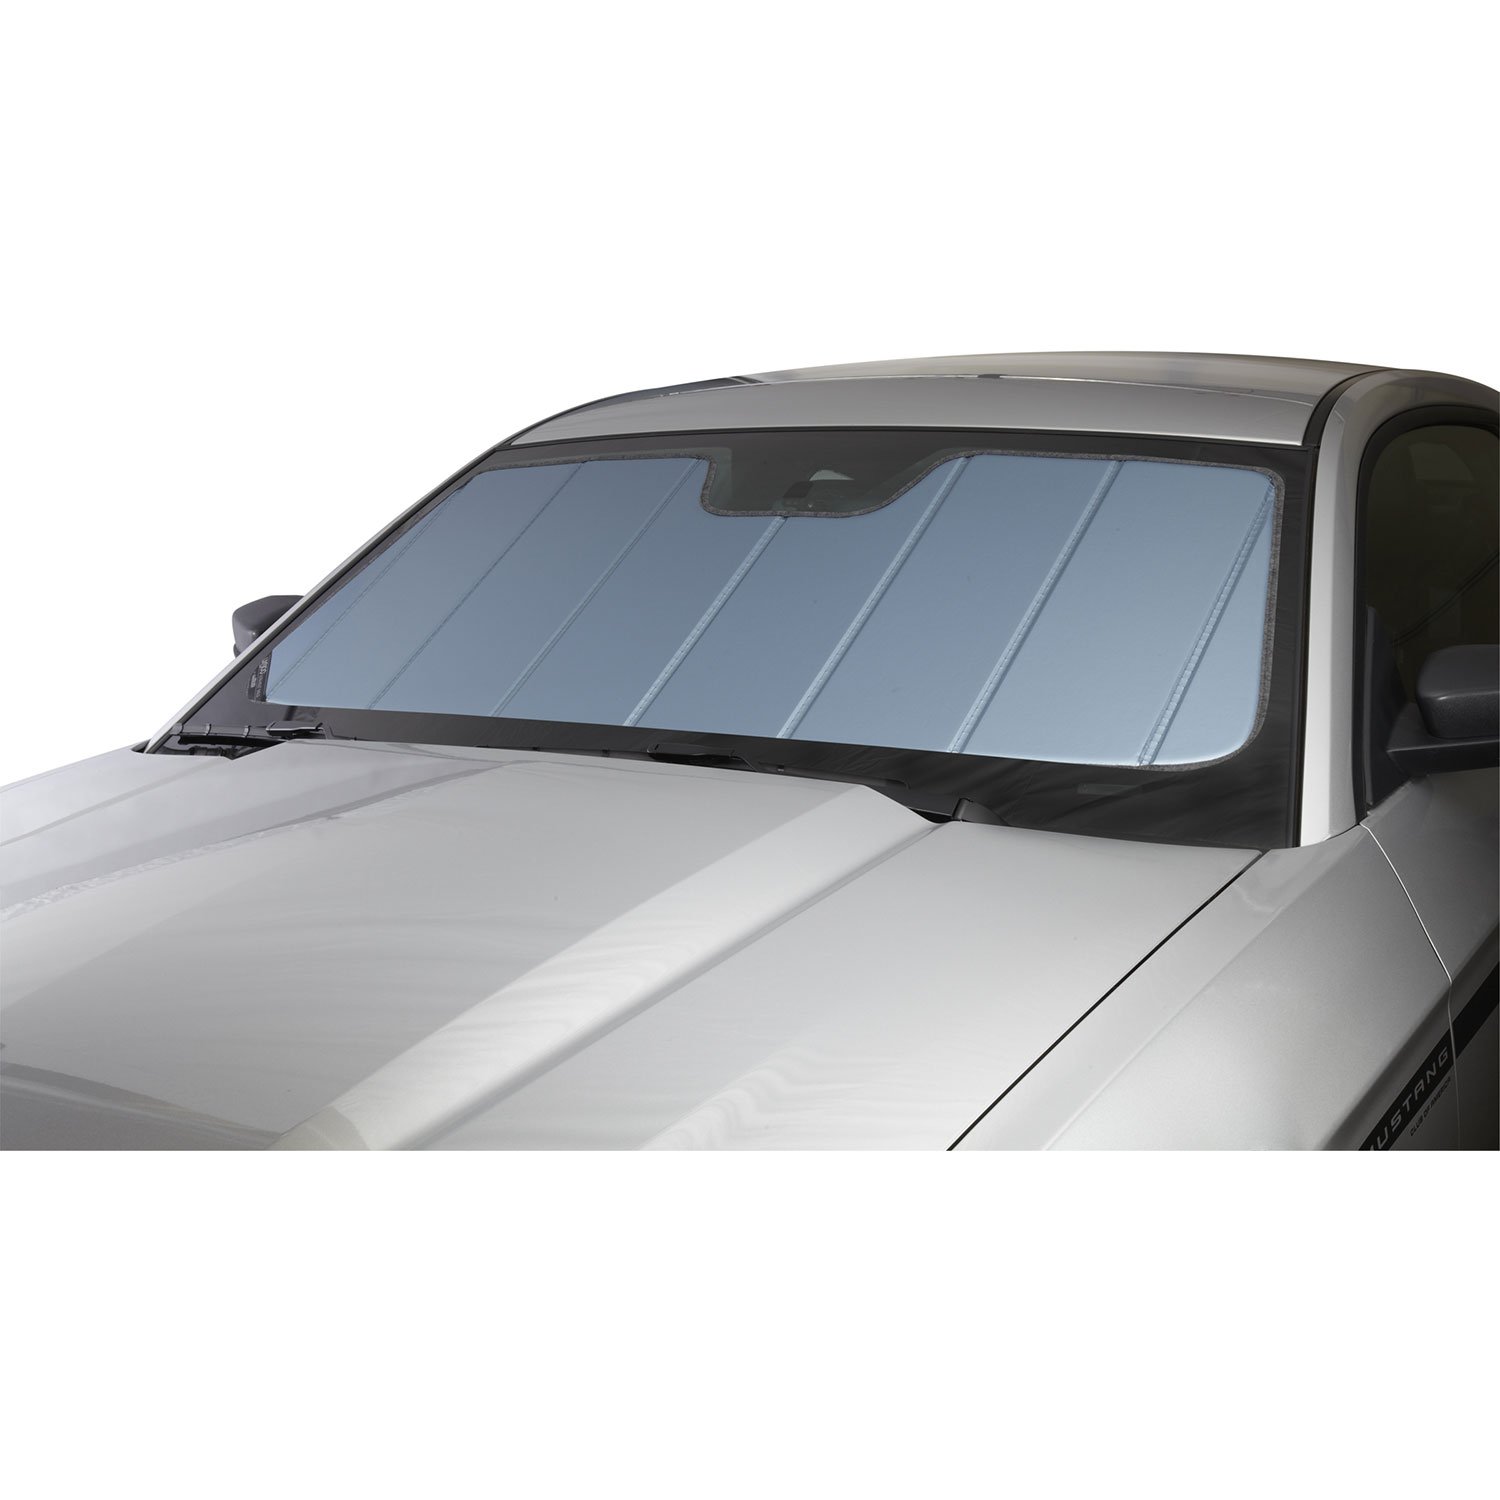 Covercraft UVS100 Custom Sunscreen | UV11512BL | Kompatibel mit ausgewählten BMW 5er Modellen, Blau Metallic von Covercraft